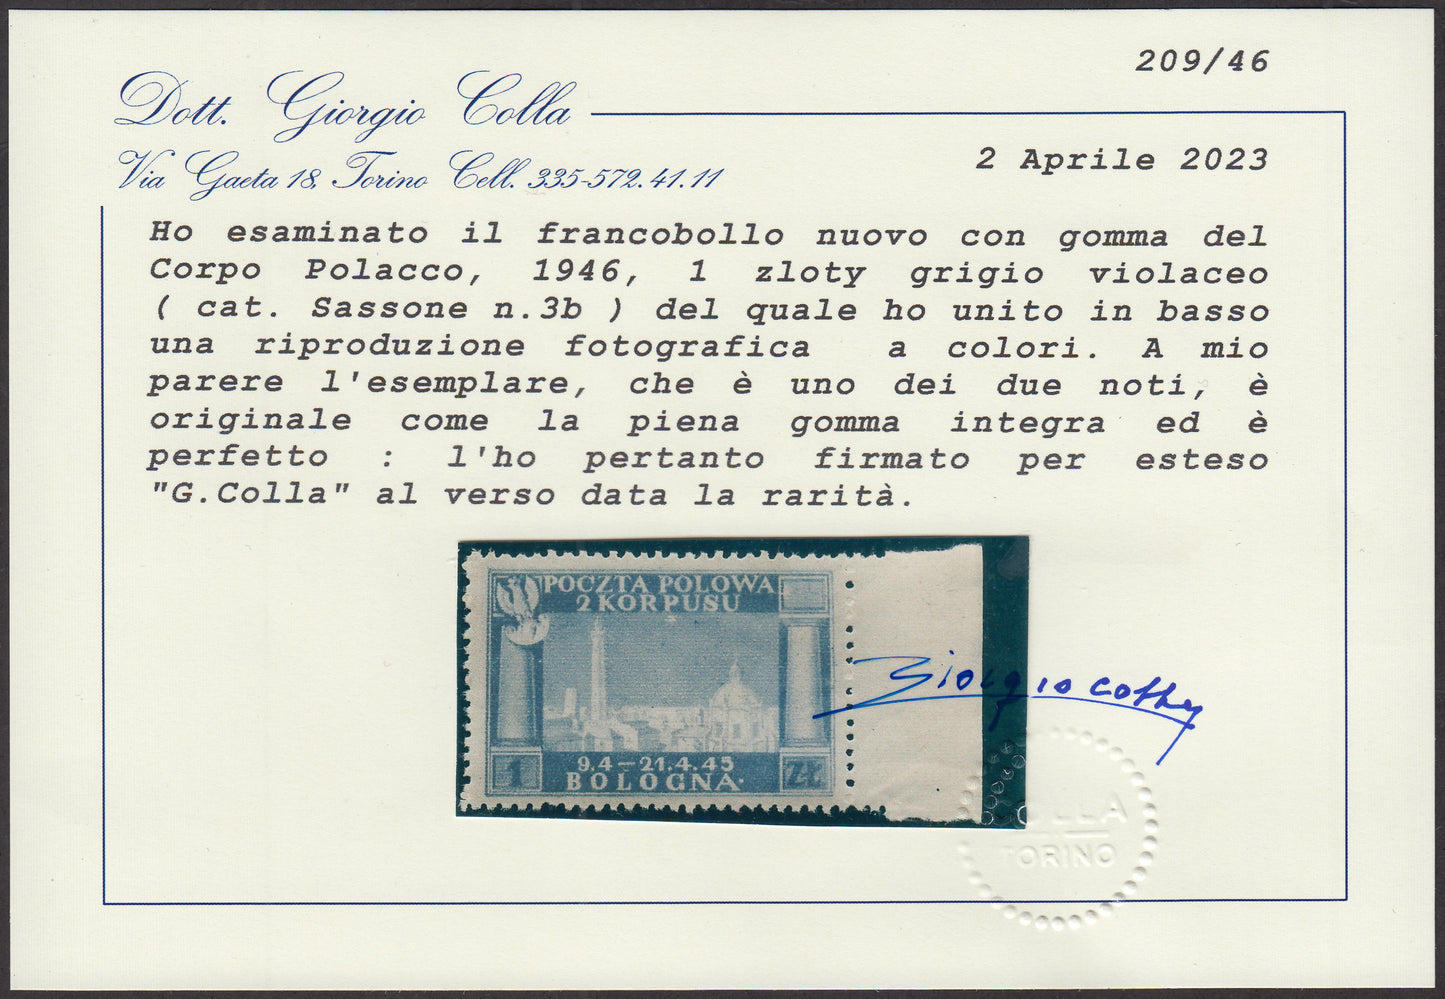 CP199 - 1946 - Corpo Polacco, vittorie polacche in Italia serie su carta grigia di qualità scadente, 1z. grigio violaceo nuovo con gomma integra, colore rarissimo (3b)